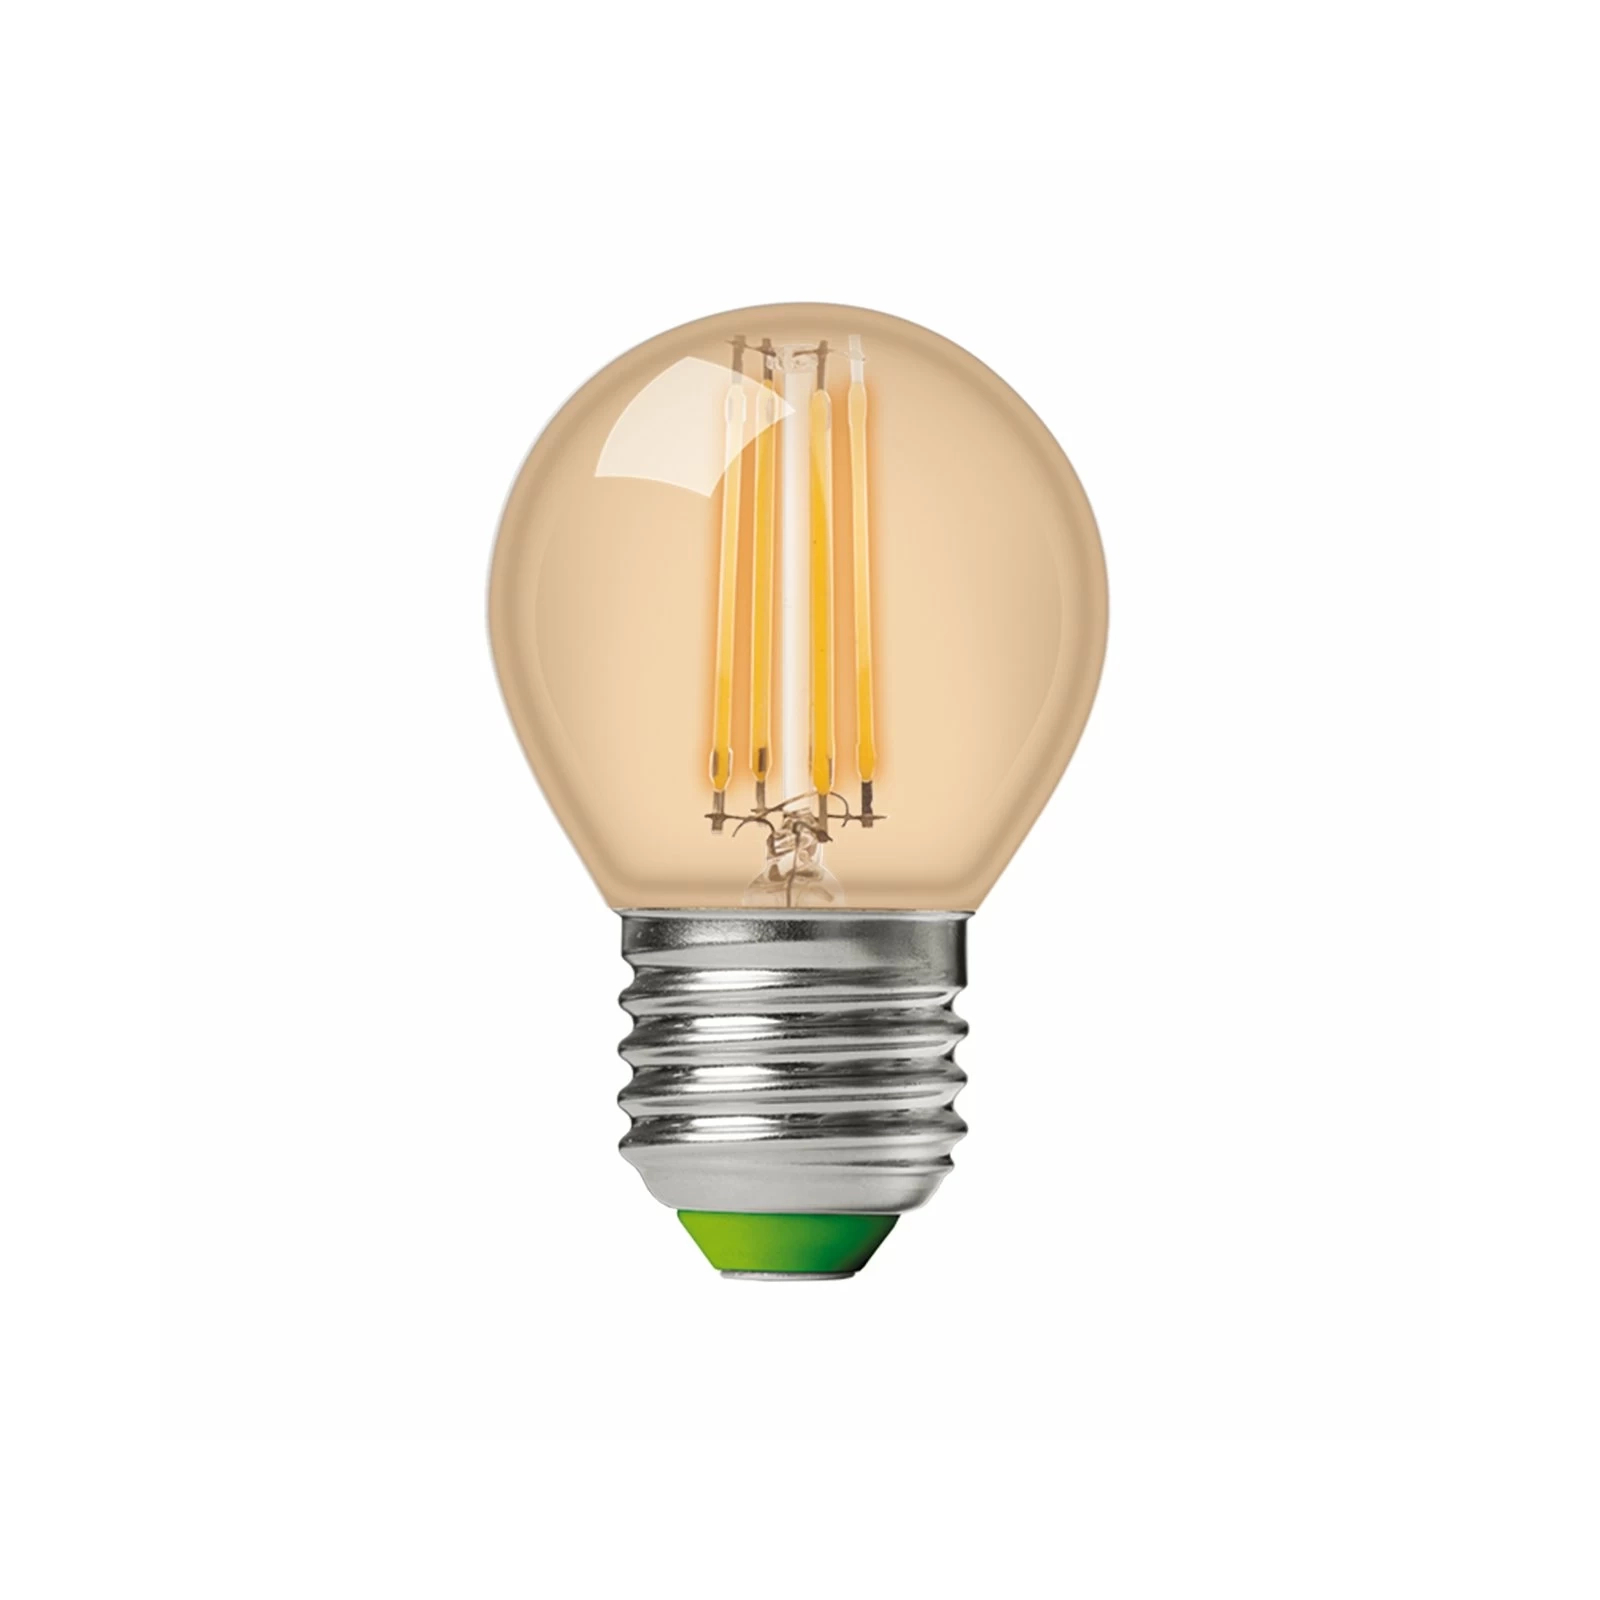 Лампочка Eurolamp LED G45 5W 530 Lm E27 3000K deco 2шт (MLP-LED-G45-05273(Amber)) изображение 2